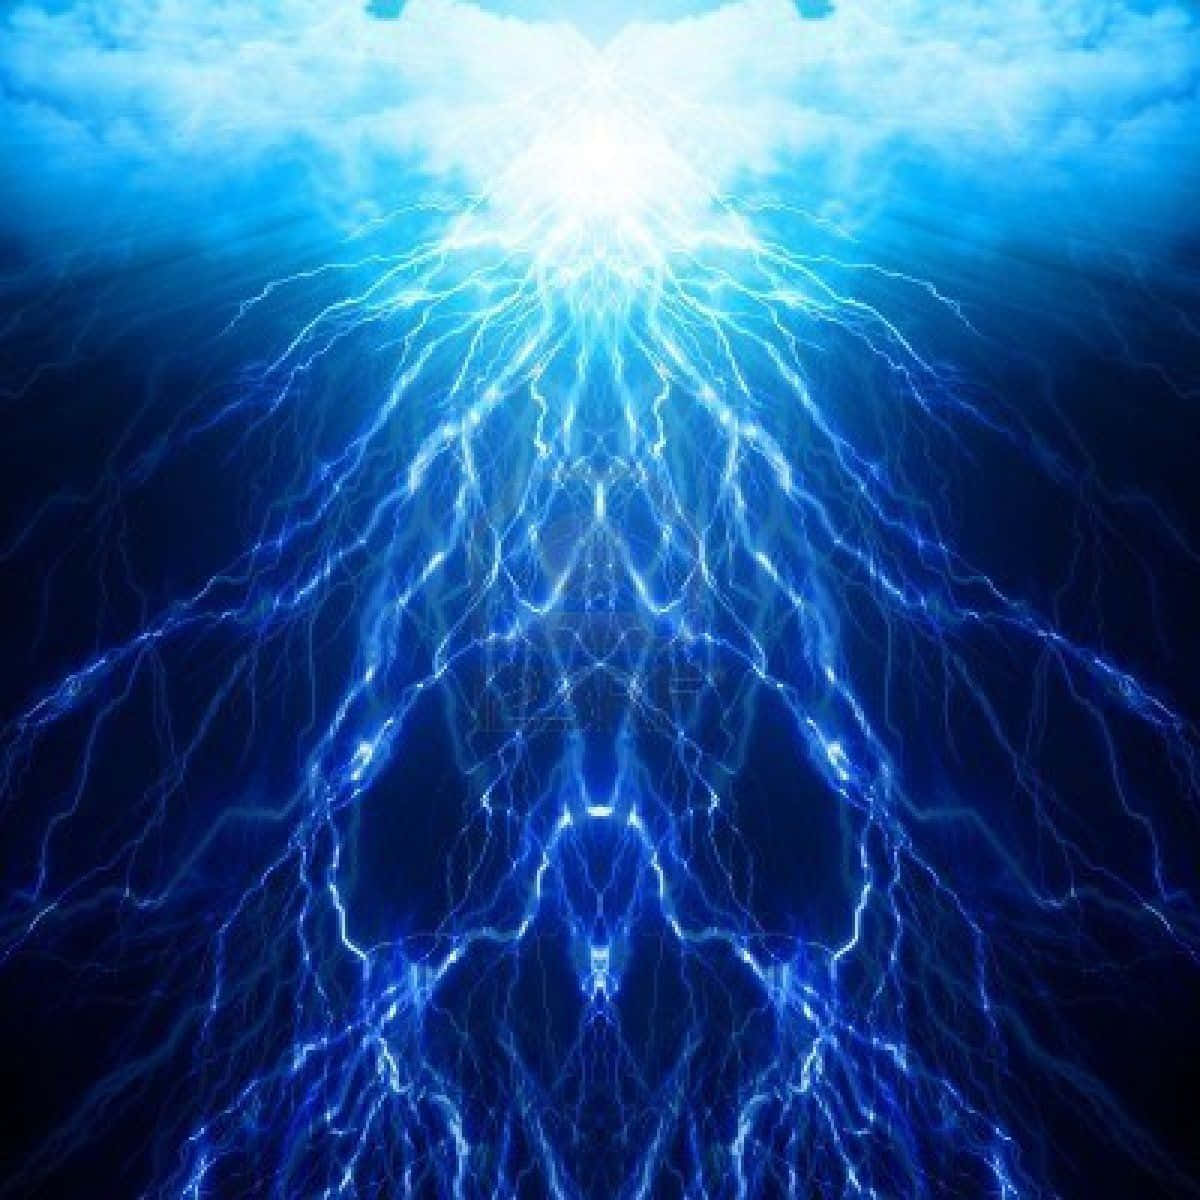 Eineelektrisierende Darstellung Von Blitzen, Gesetzt Auf Einem Kühlen Blauen Hintergrund. Wallpaper